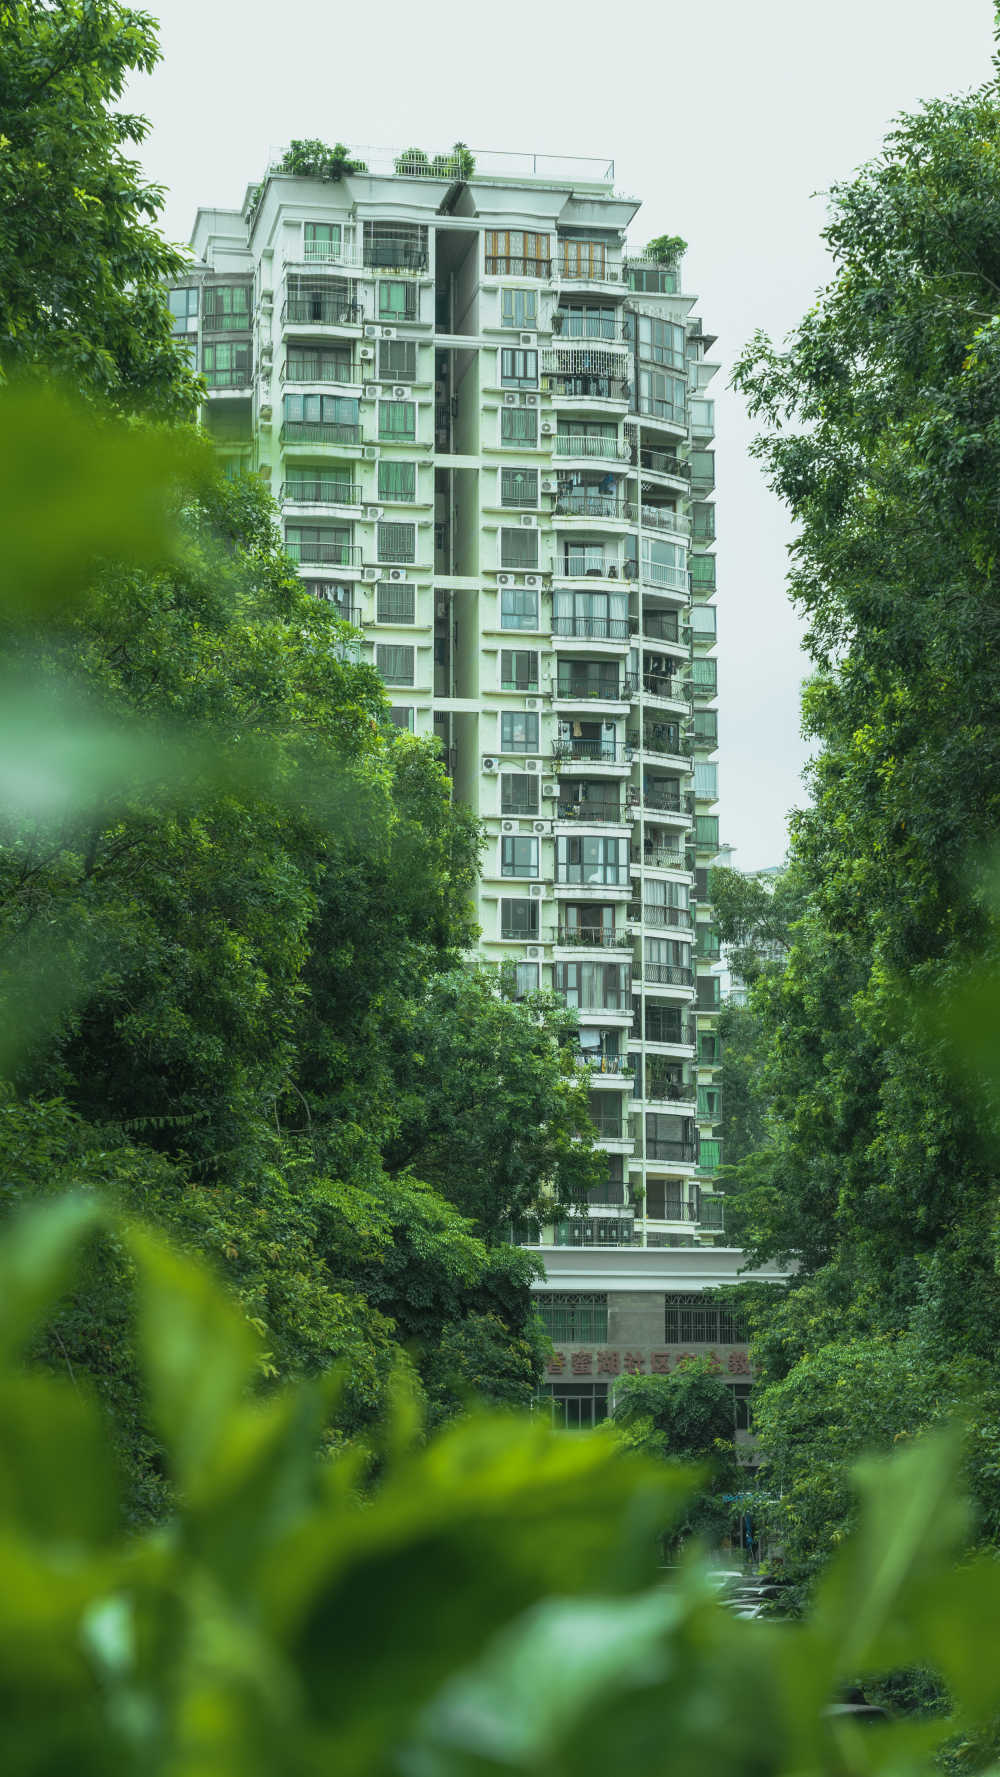 被绿色包围的居民楼